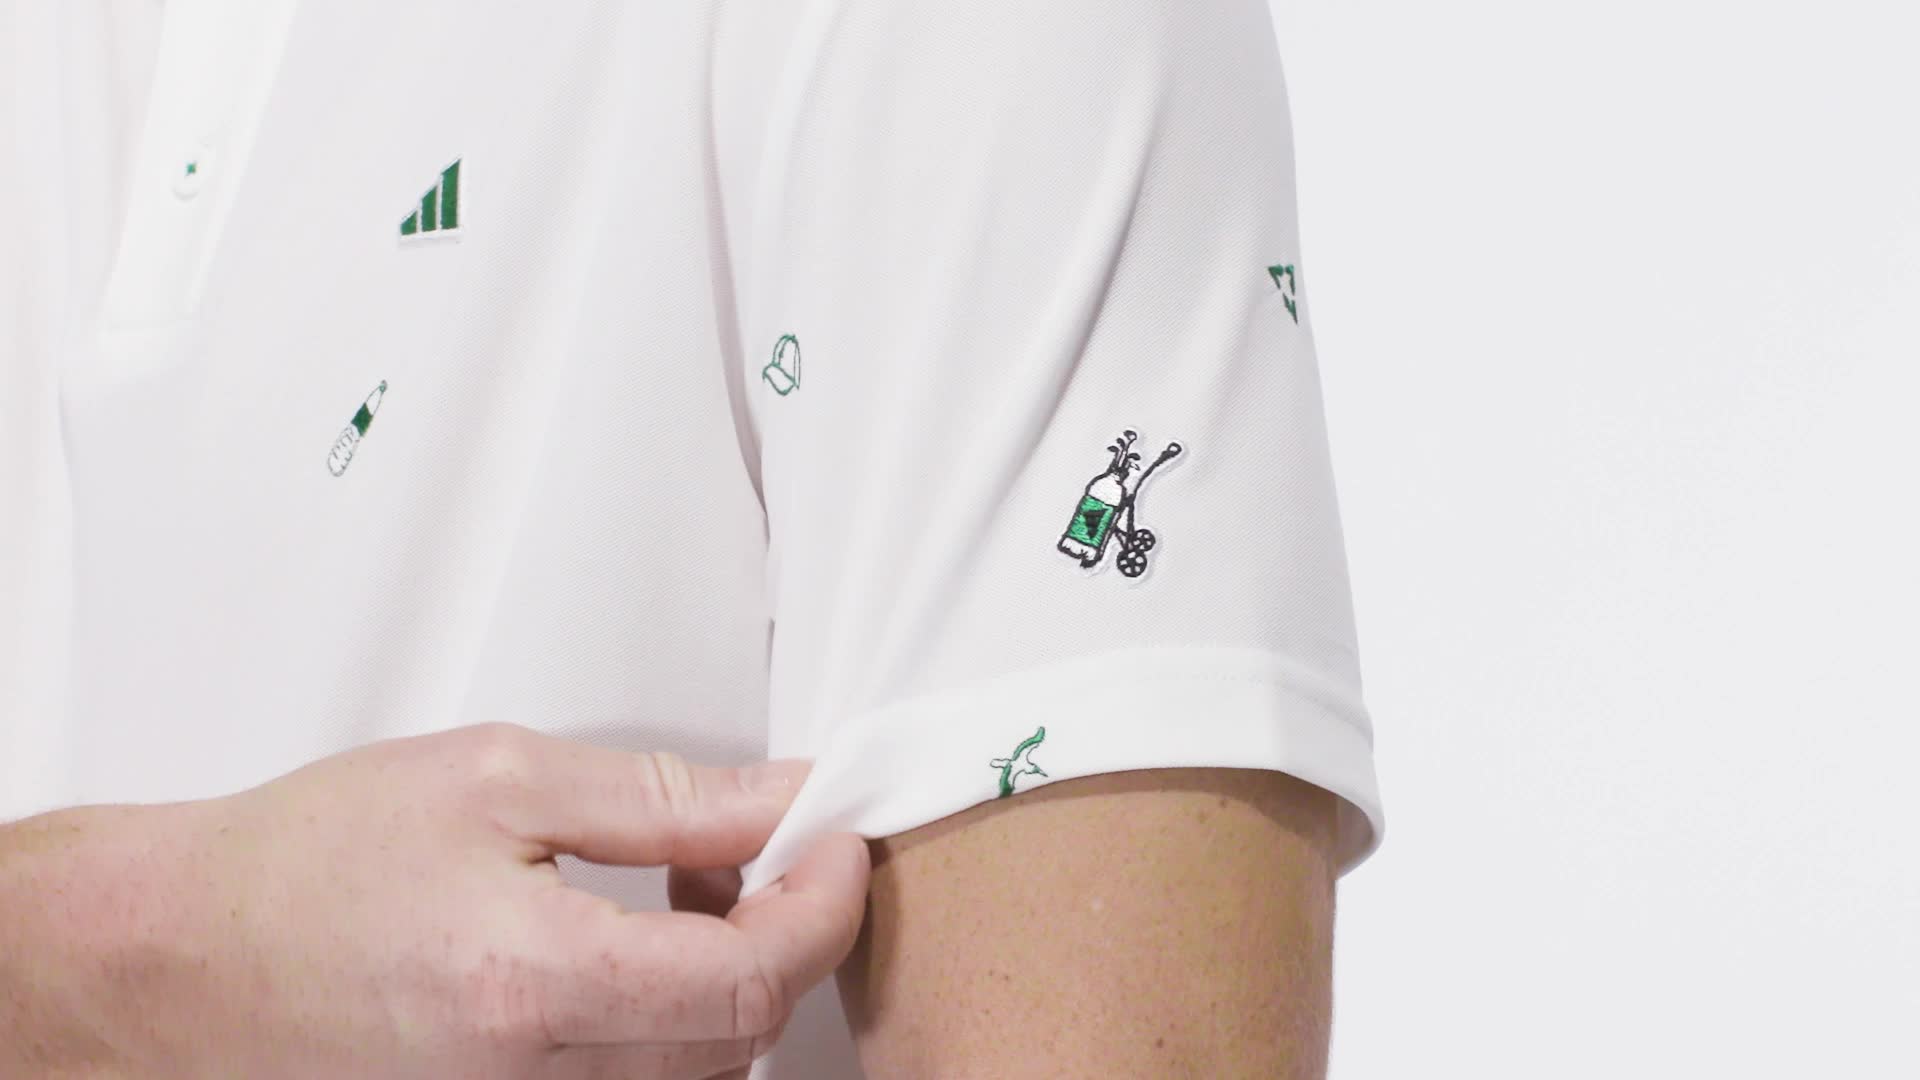 Louis Vuitton White Game On Polo Shirt - Tagotee